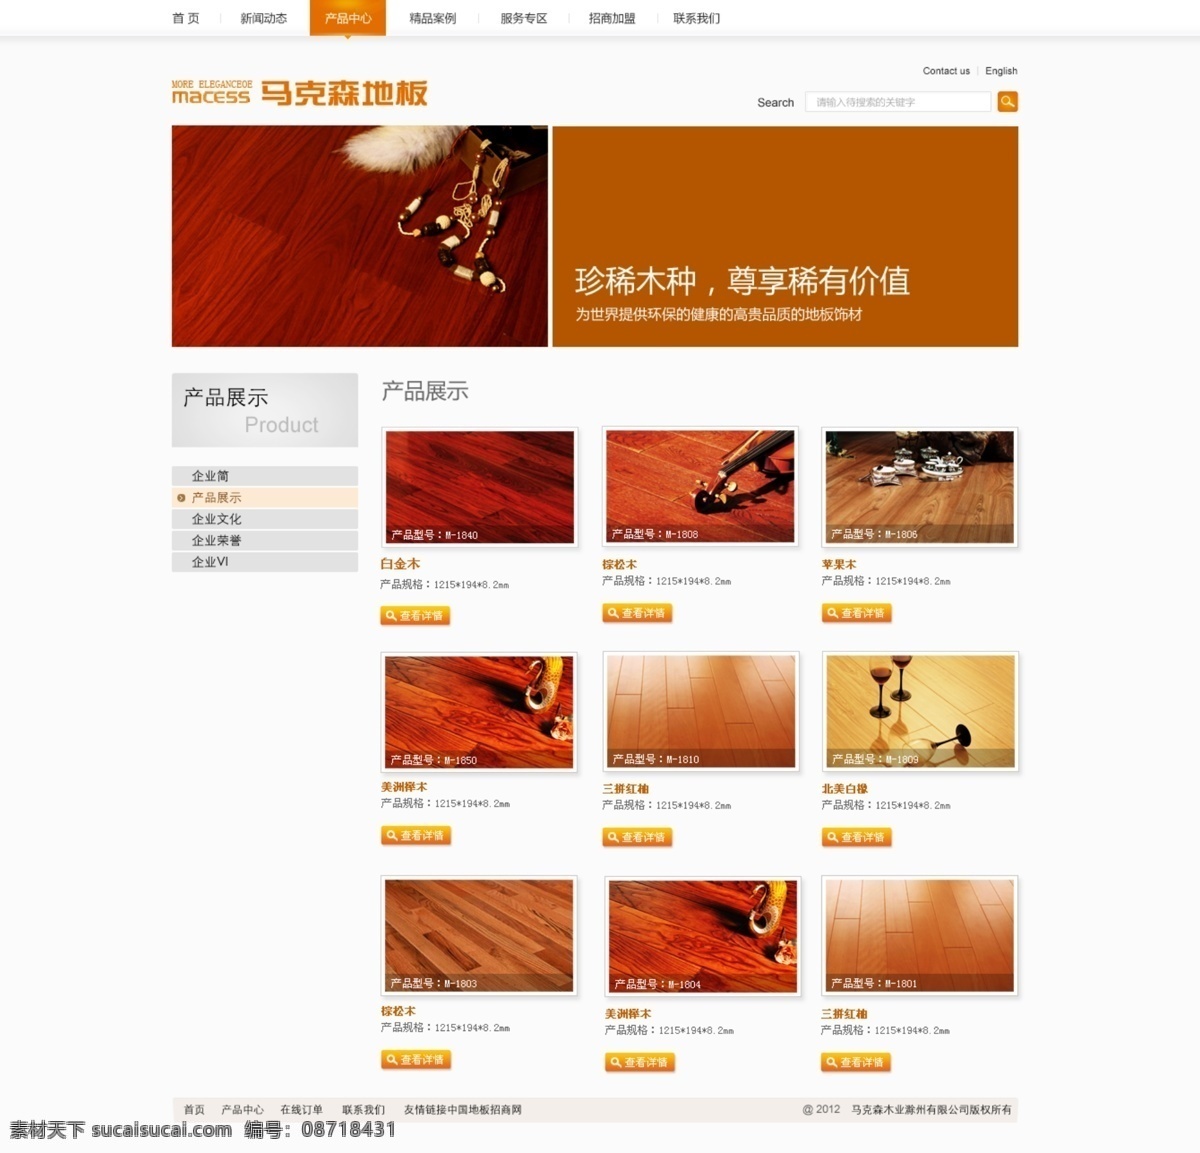 产品展示 地板 家居网站 网页模板 源文件 中文模板 马克森 模板下载 高贵 banner 装饰素材 室内设计